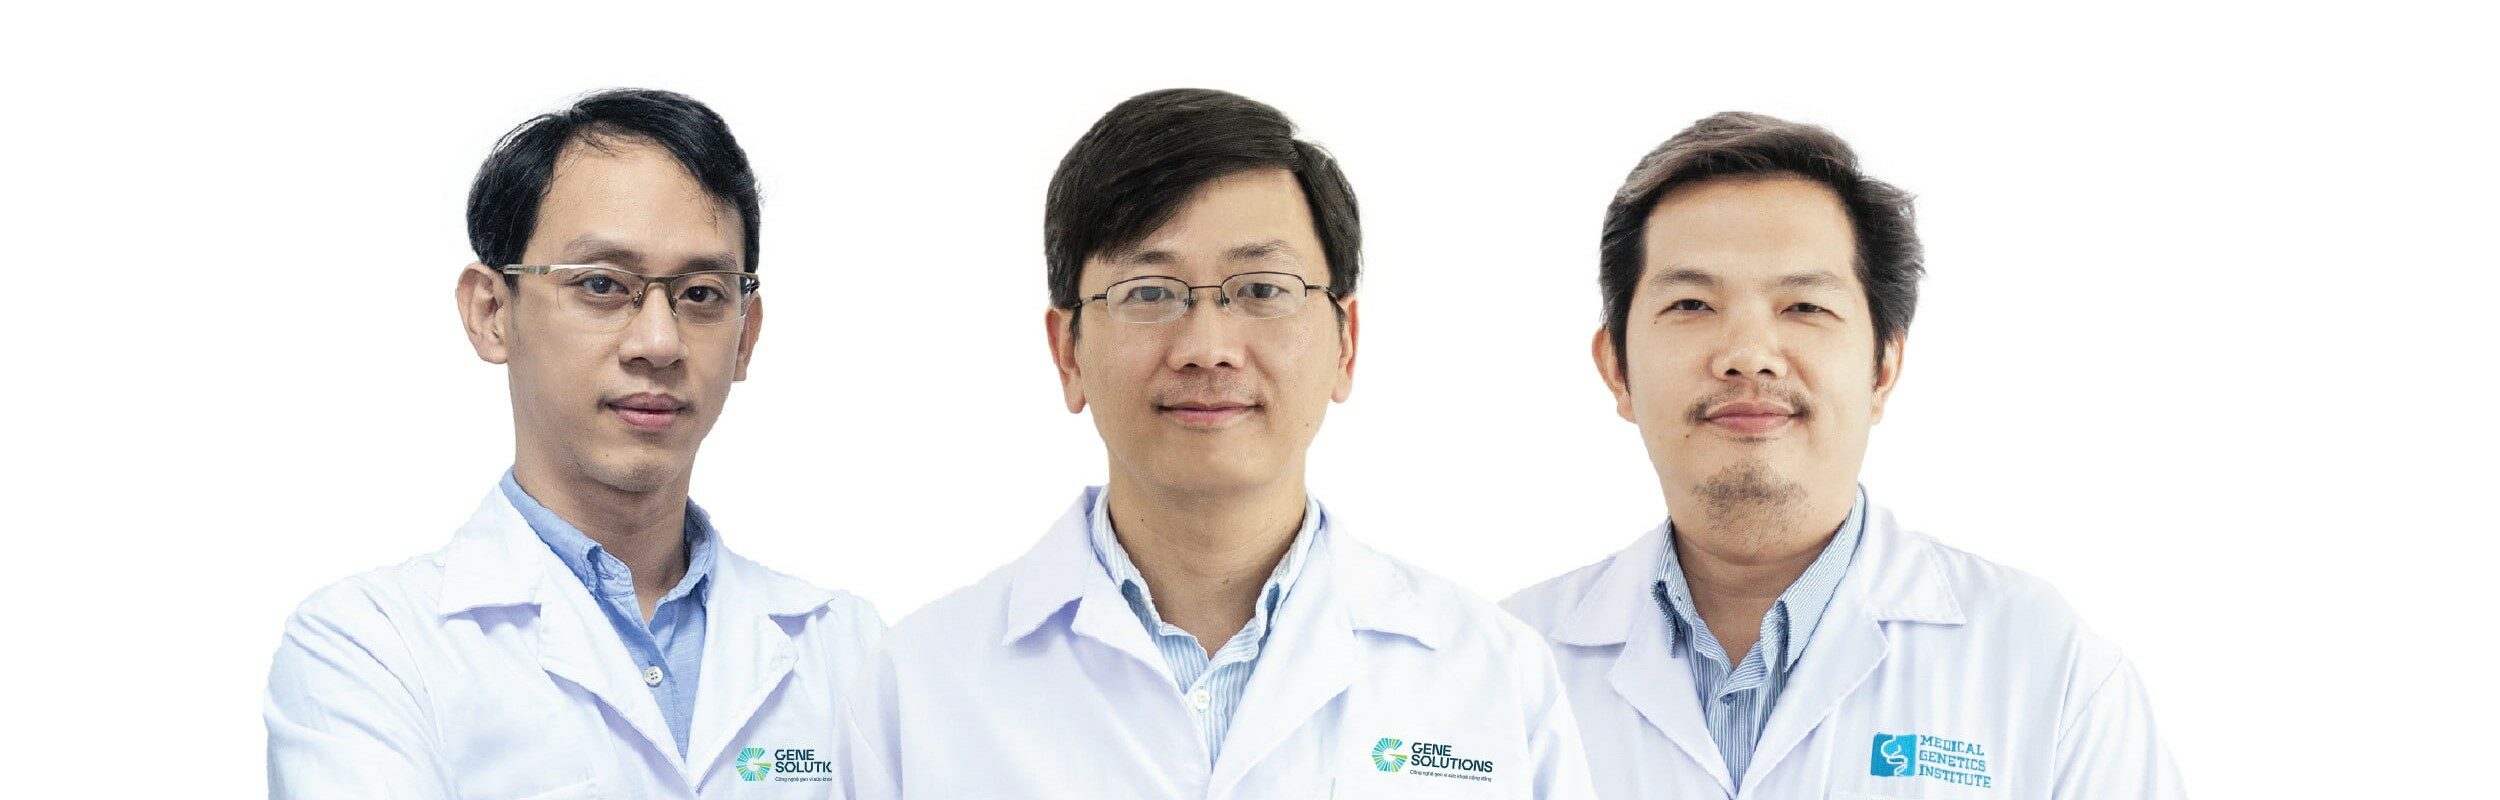 Gene Solutions: Khi một khoản đầu tư mạo hiểm trở thành một trong những công ty công nghệ sinh học thành công đầu tiên tại Việt Nam và phát triển khắp Đông Nam Á